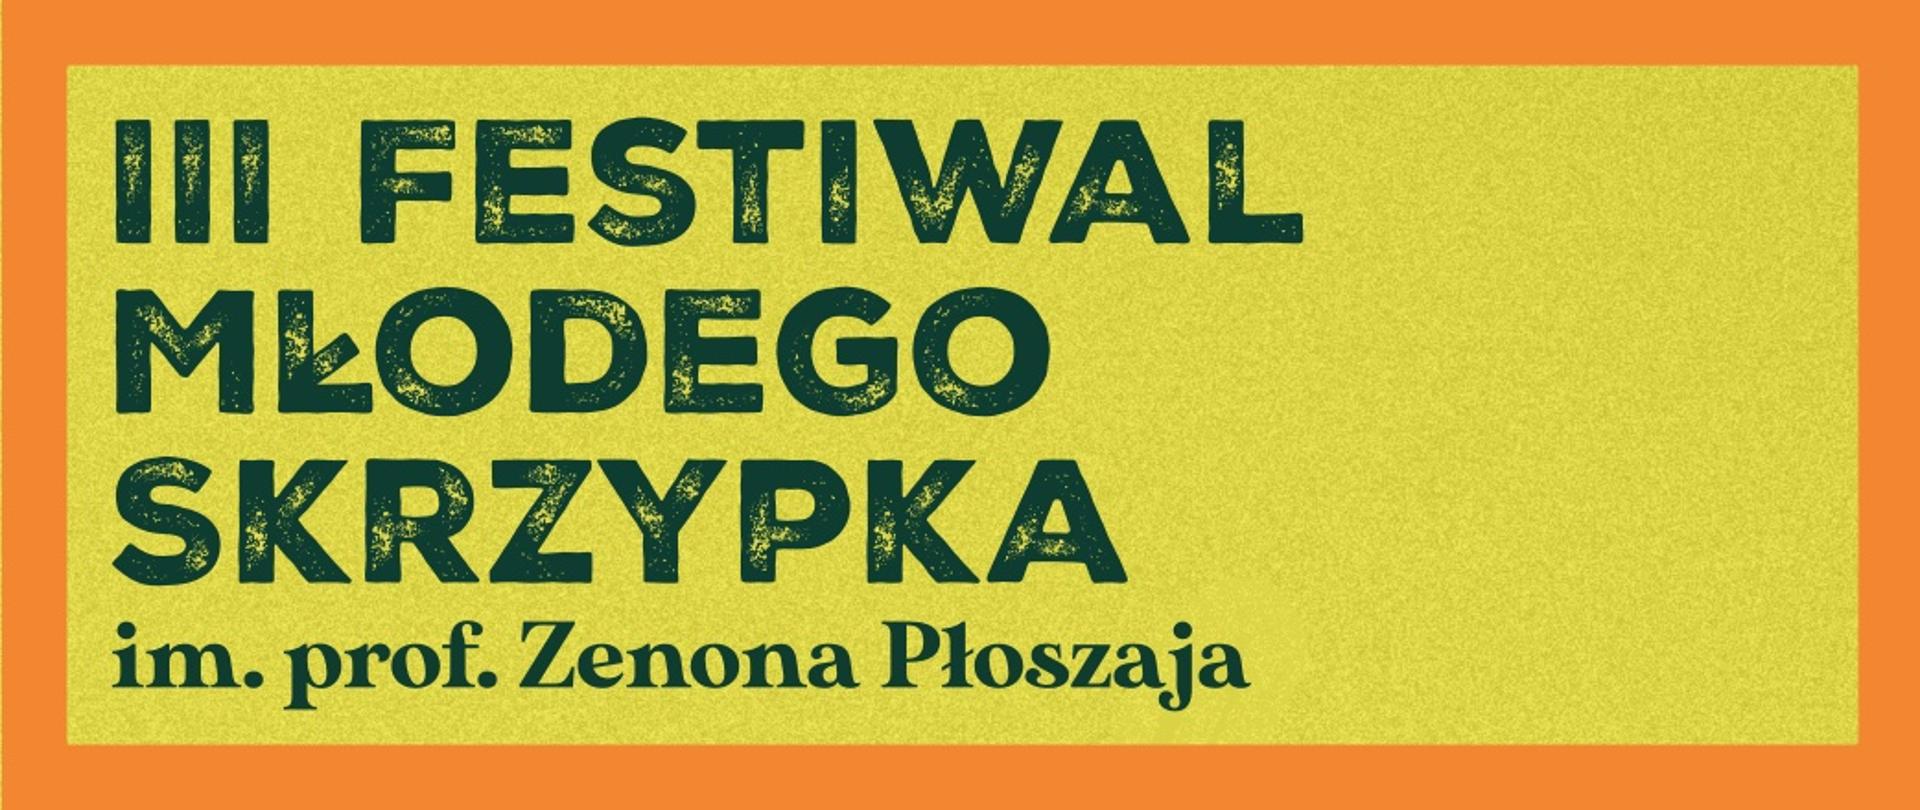 Czarny napis III FESTIWAL MŁODEGO SKRZYPKA im. prof. Zenona Płoszaja na żółtym tle otoczony pomarańczową ramką.